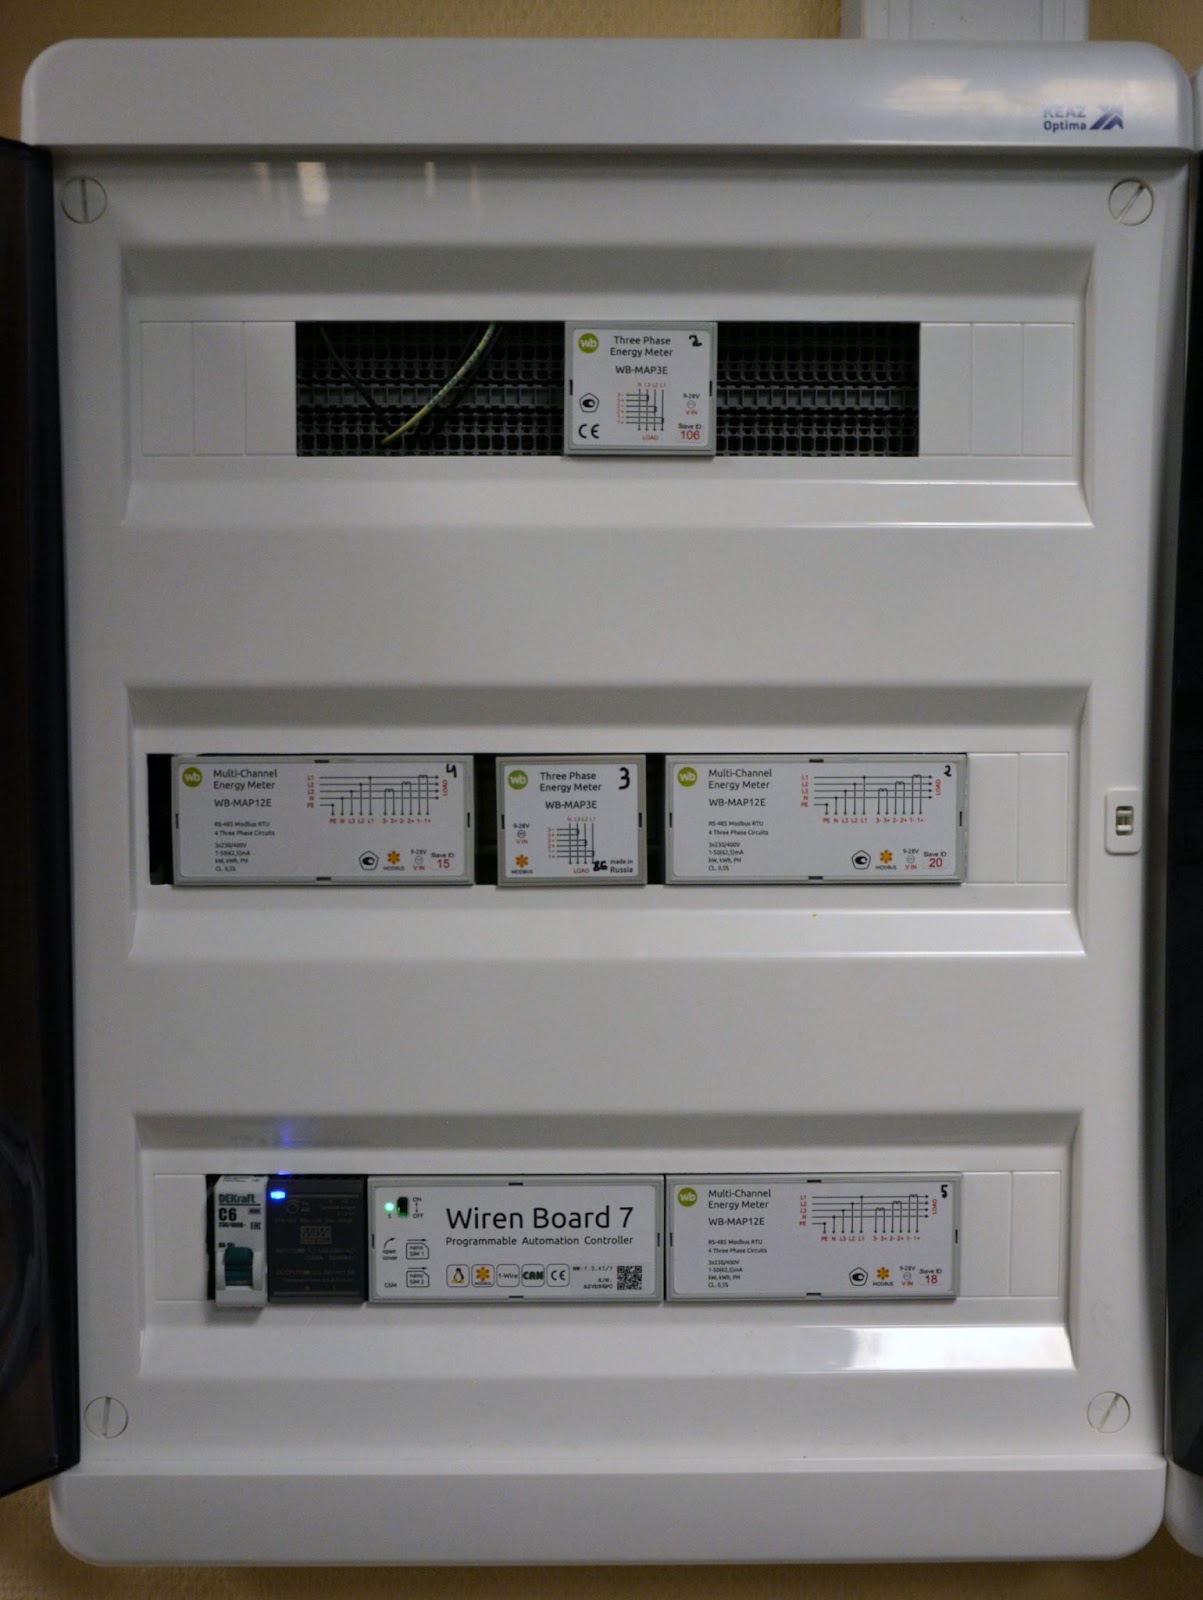 Второй щит мониторинга с контроллером Wiren Board 7 и счетчиками электроэнергии WB-MAP  